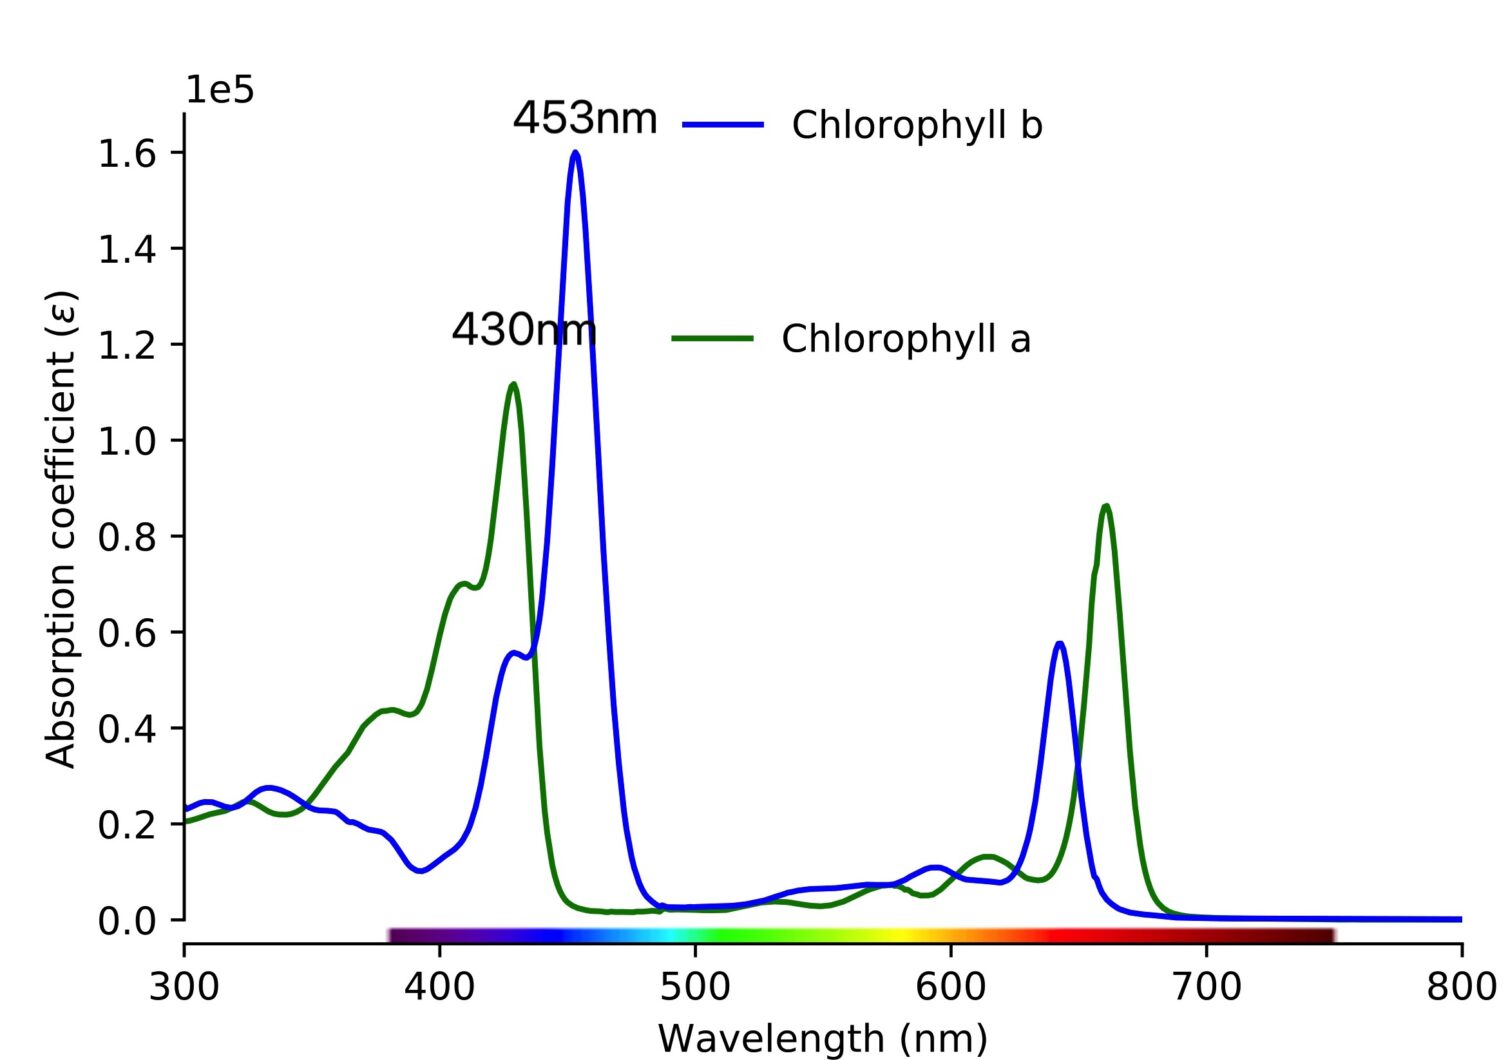 La chlorophylle a a un maximum d'absorbance approximatif de 430 nm